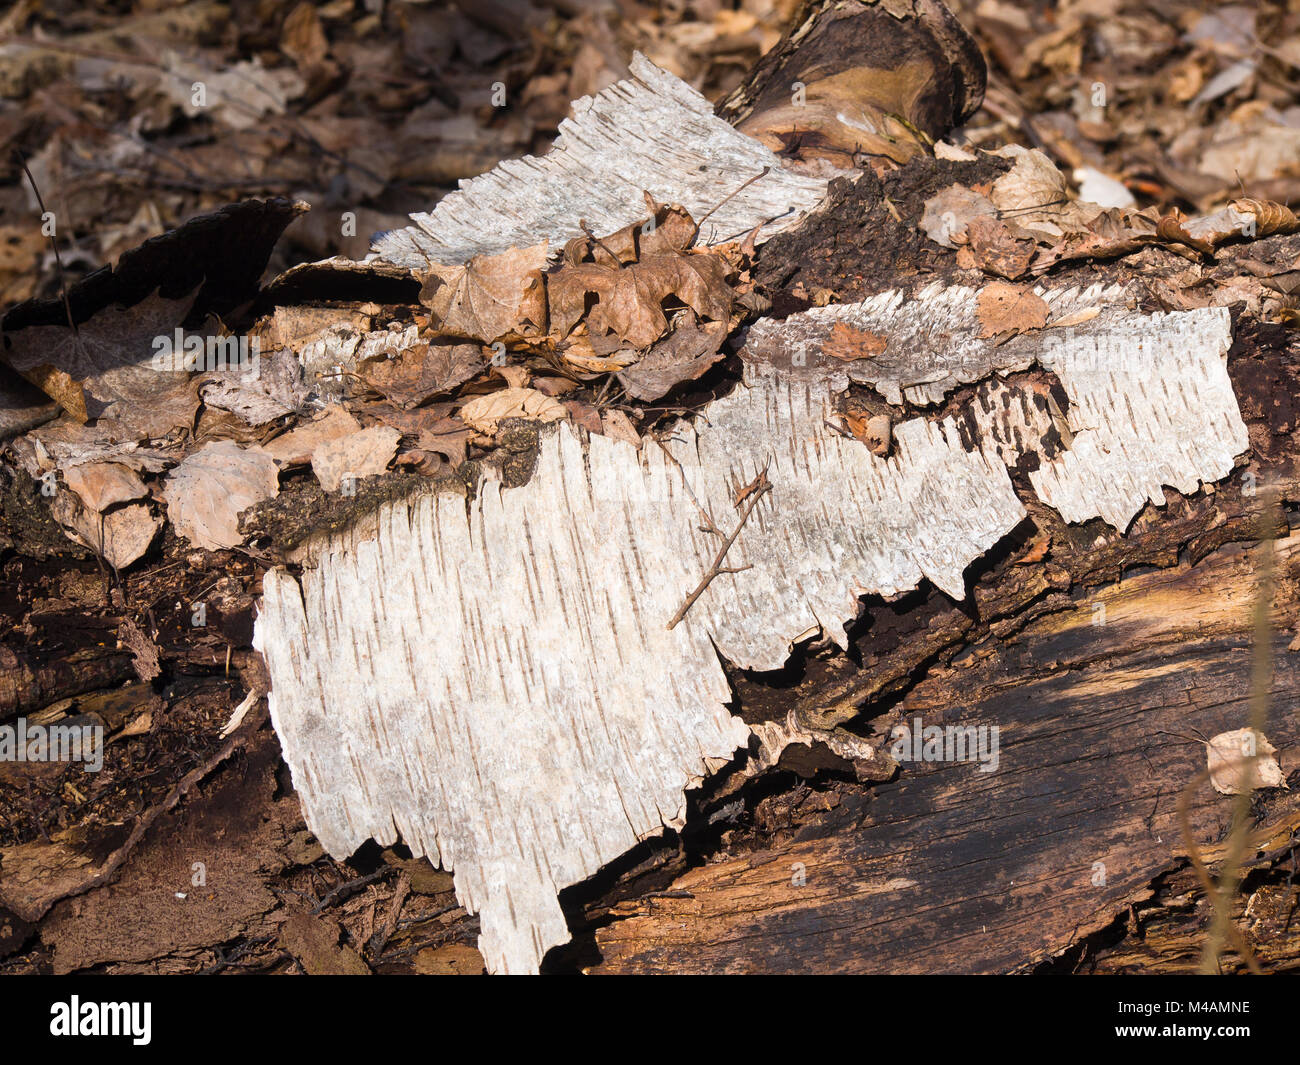 Tronco di betulla decadendo con pezzi di corteccia e foglie morte, autunno in una foresta norvegese Foto Stock